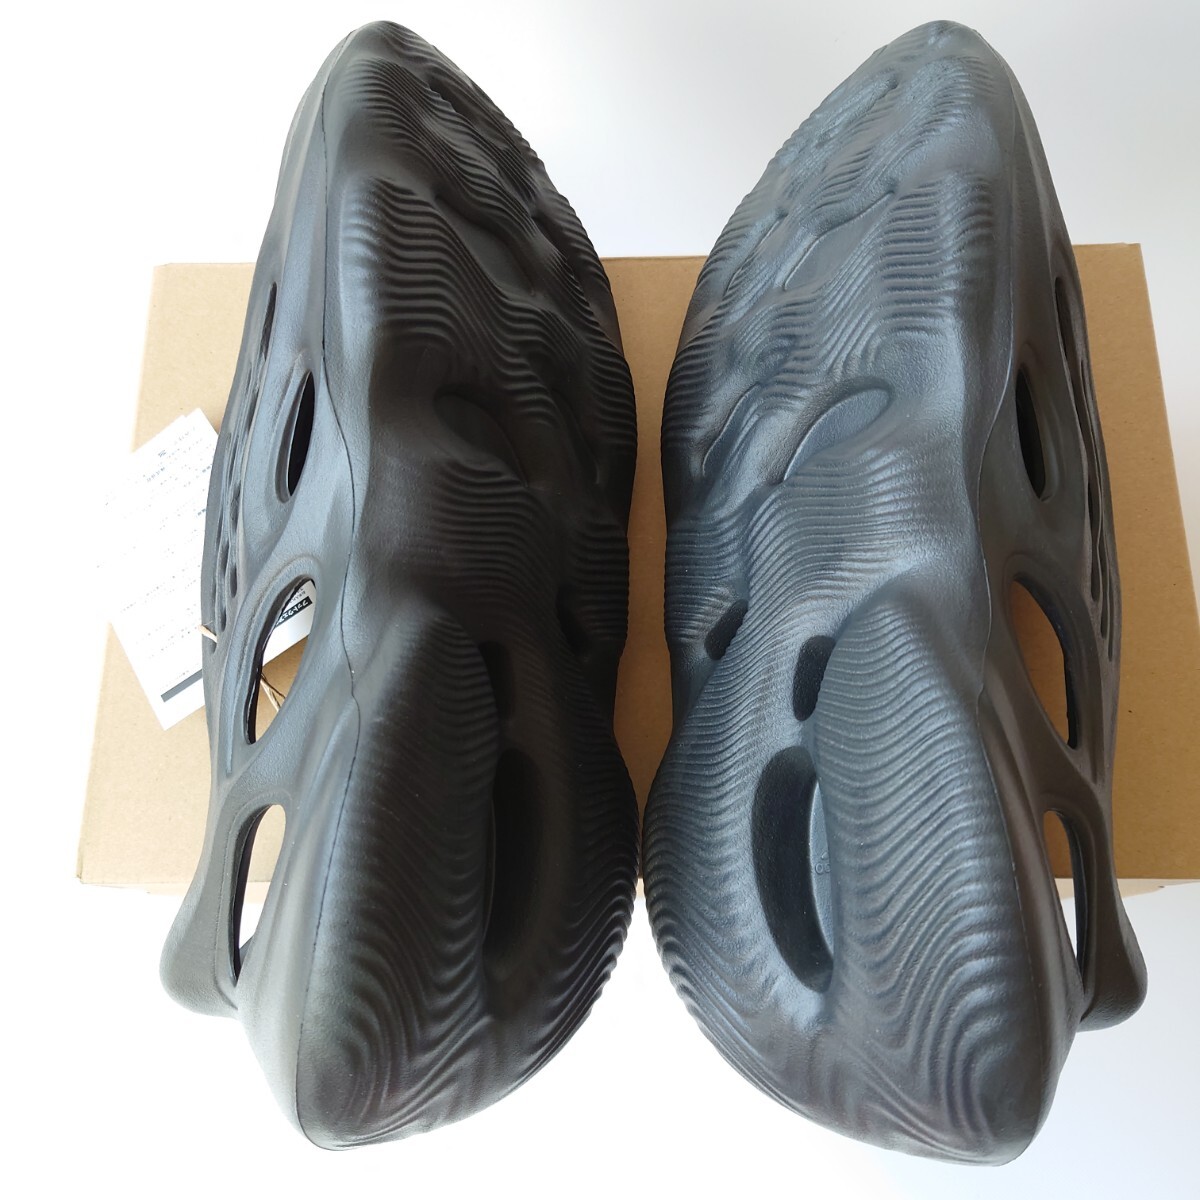 新品 29.5cm adidas YEEZY Foam Runner Onyx アディダス イージー フォーム ランナー オニキス _画像9